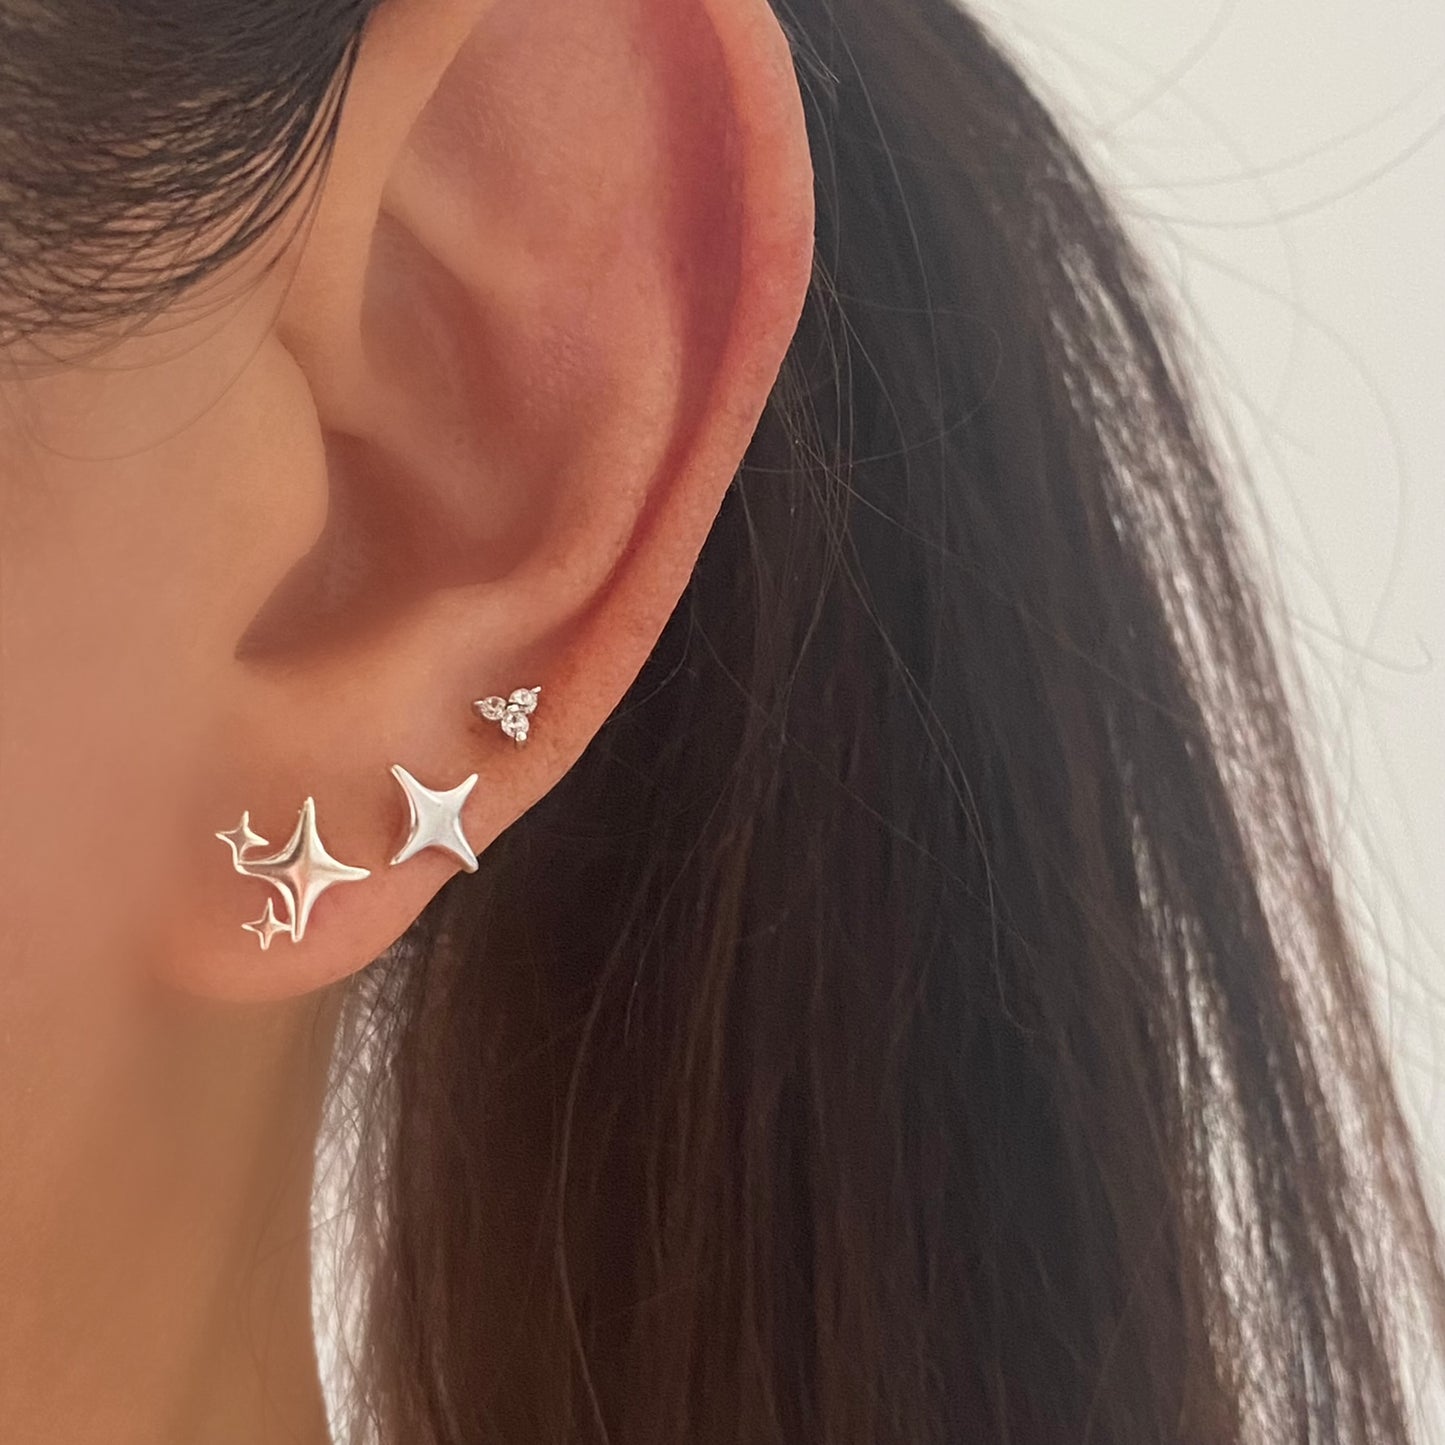 Twinkle Star Stud Earrings in Sterling Silver